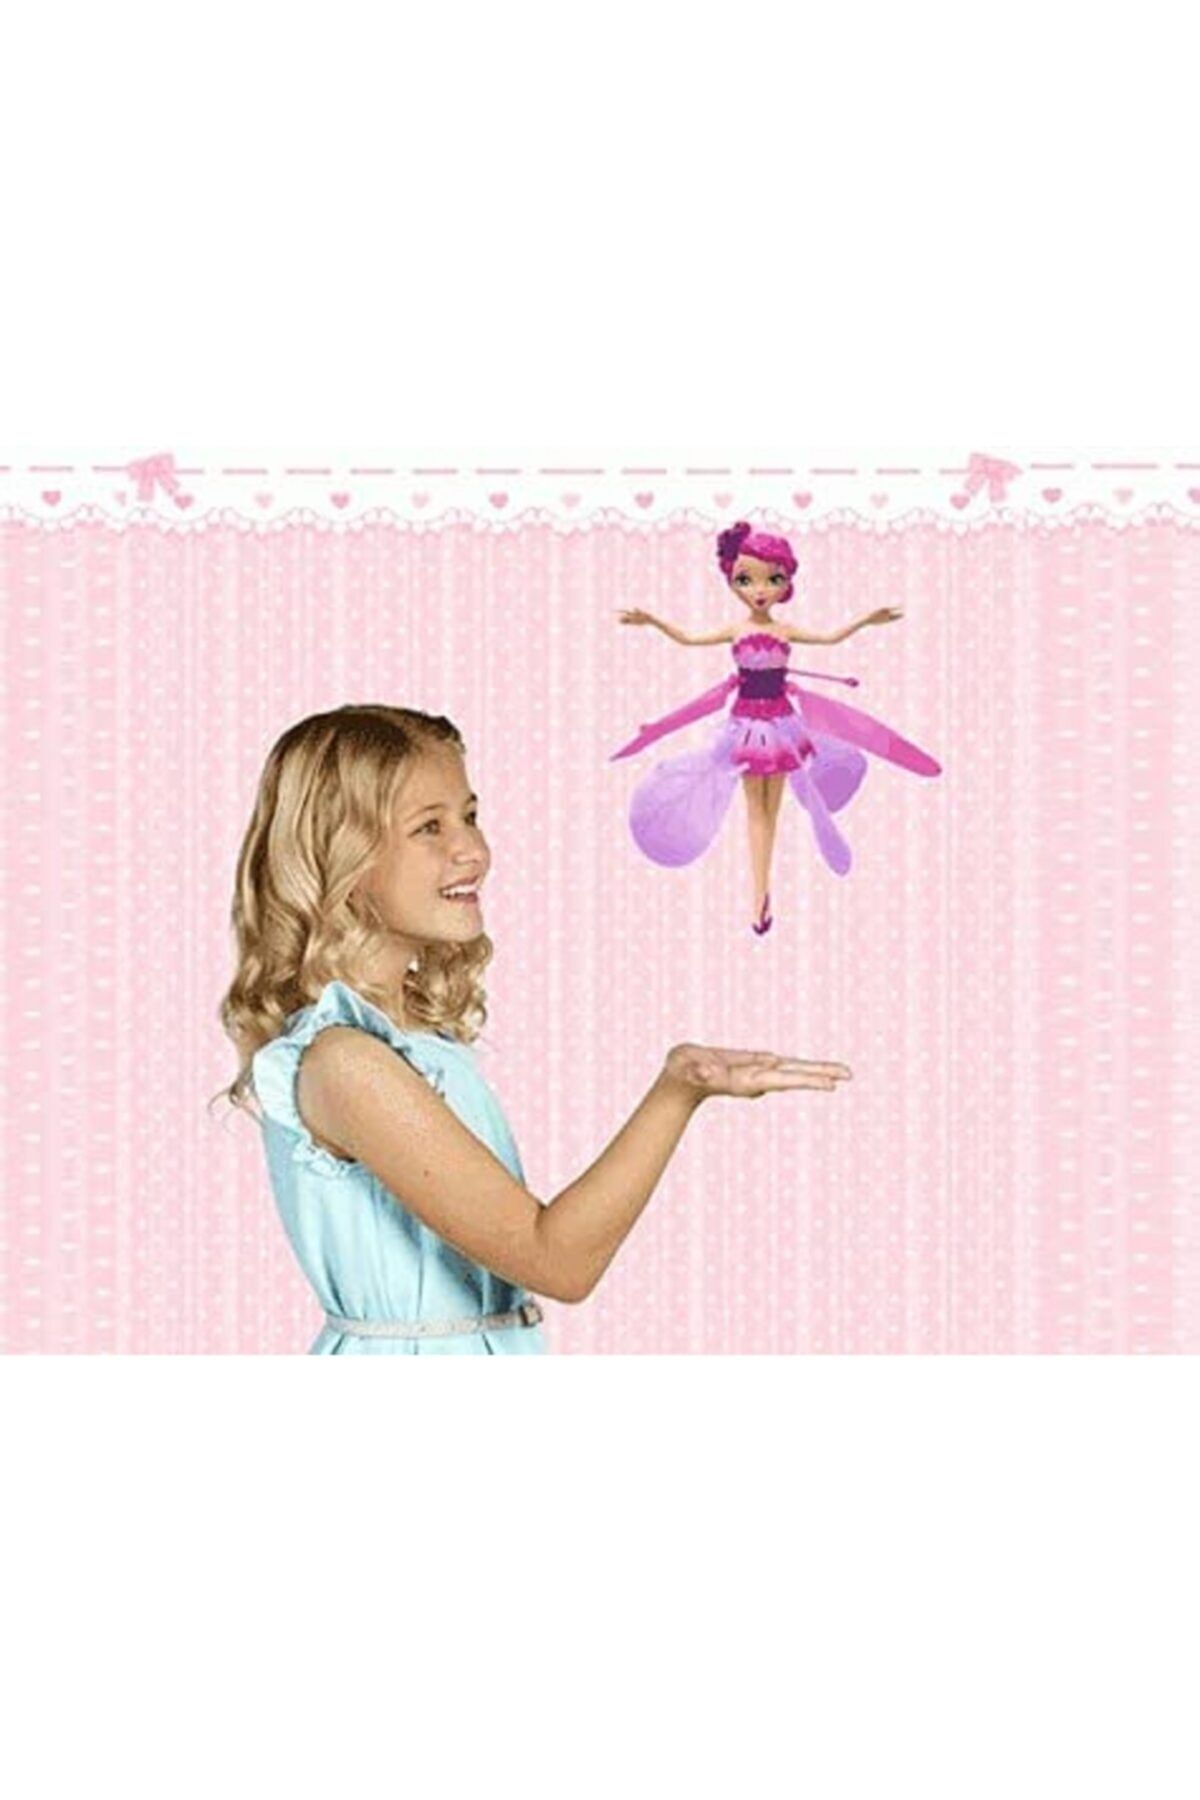 TEKNOLOJİ WORLD Uçan Peri Barbie Şarjlı Işıklı Model Bebek Oyuncak Sensörlü Uçan Peri